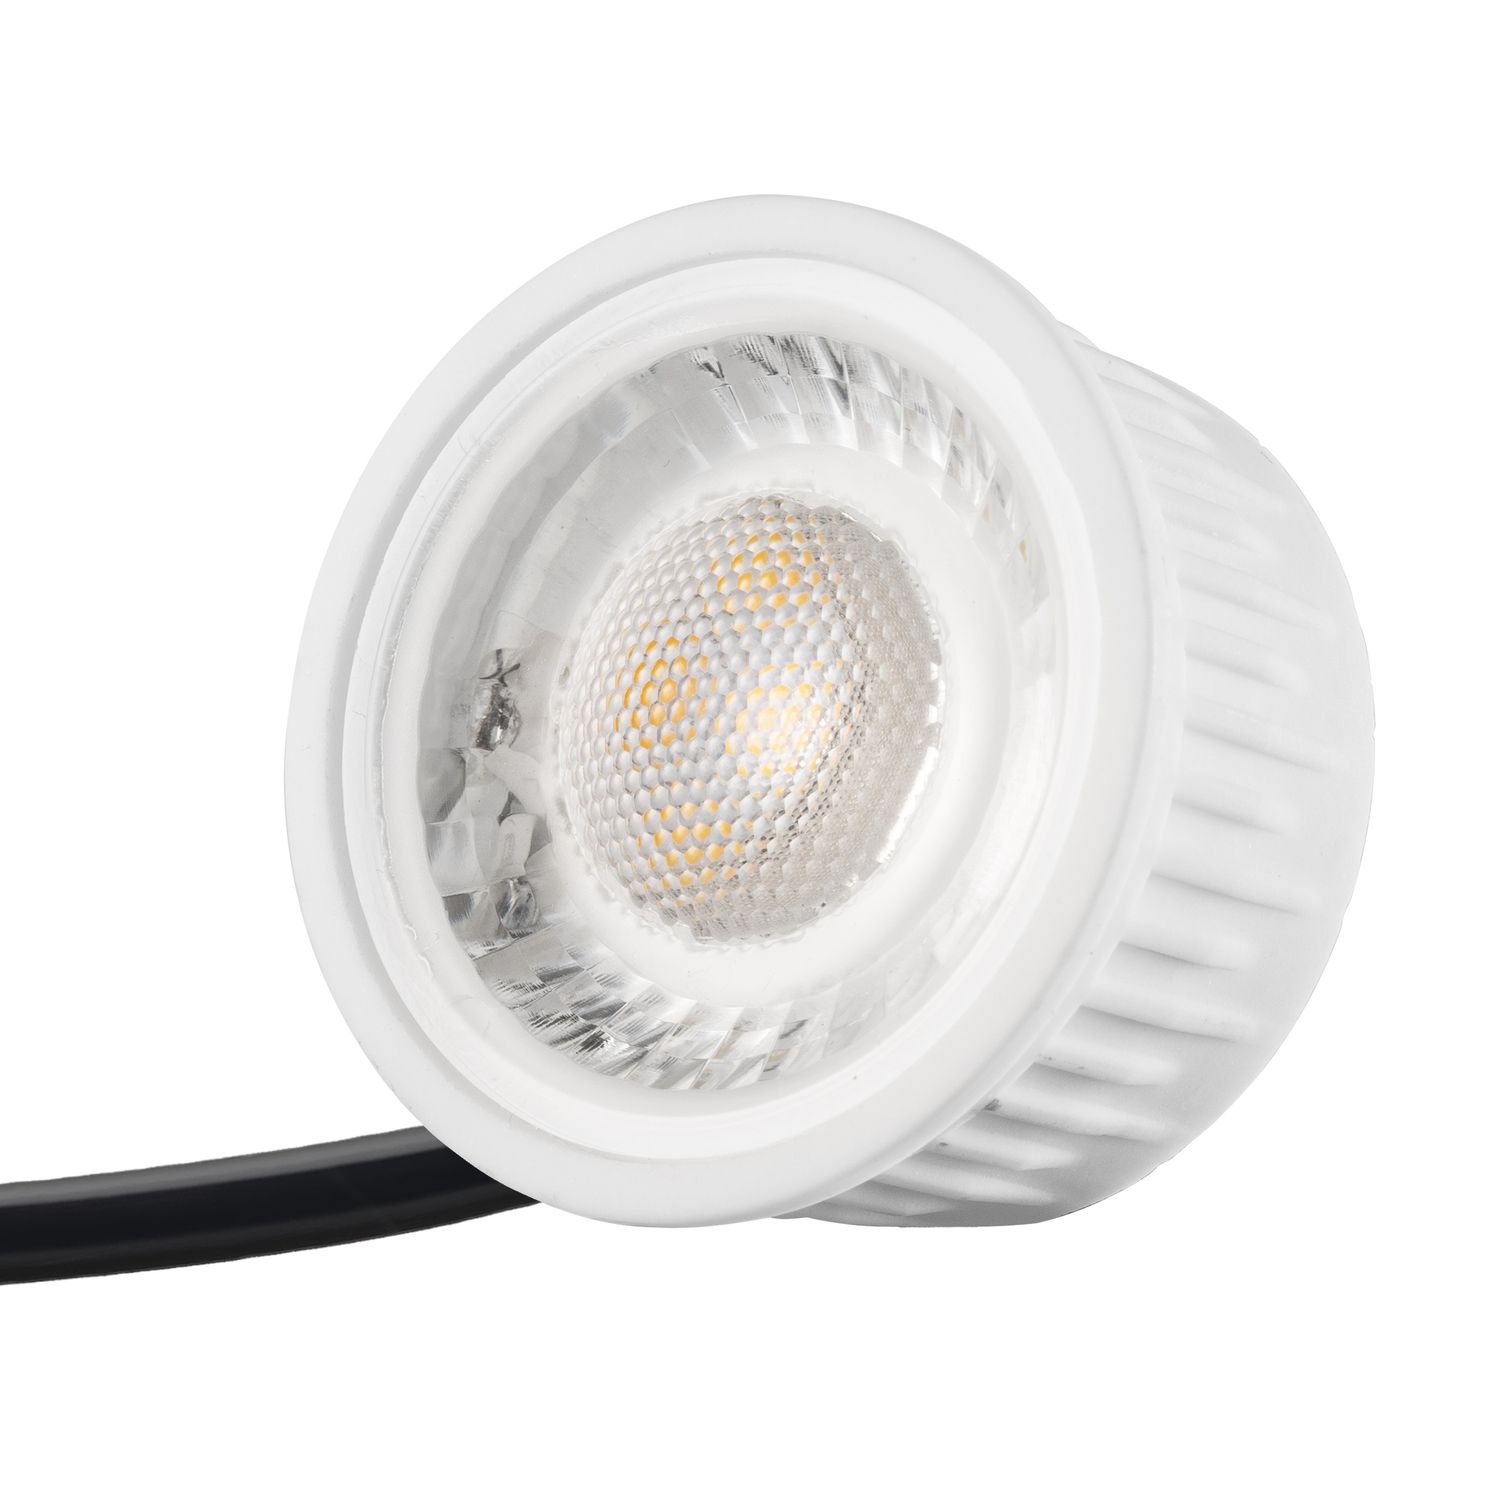 LED Einbaustrahler Set extra flach in weiß mit 5W Leuchtmittel von LEDANDO  - 4000K neutralweiß - 60° Abstrahlwinkel - 50W Ersatz - rund | LEDANDO  Onlineshop